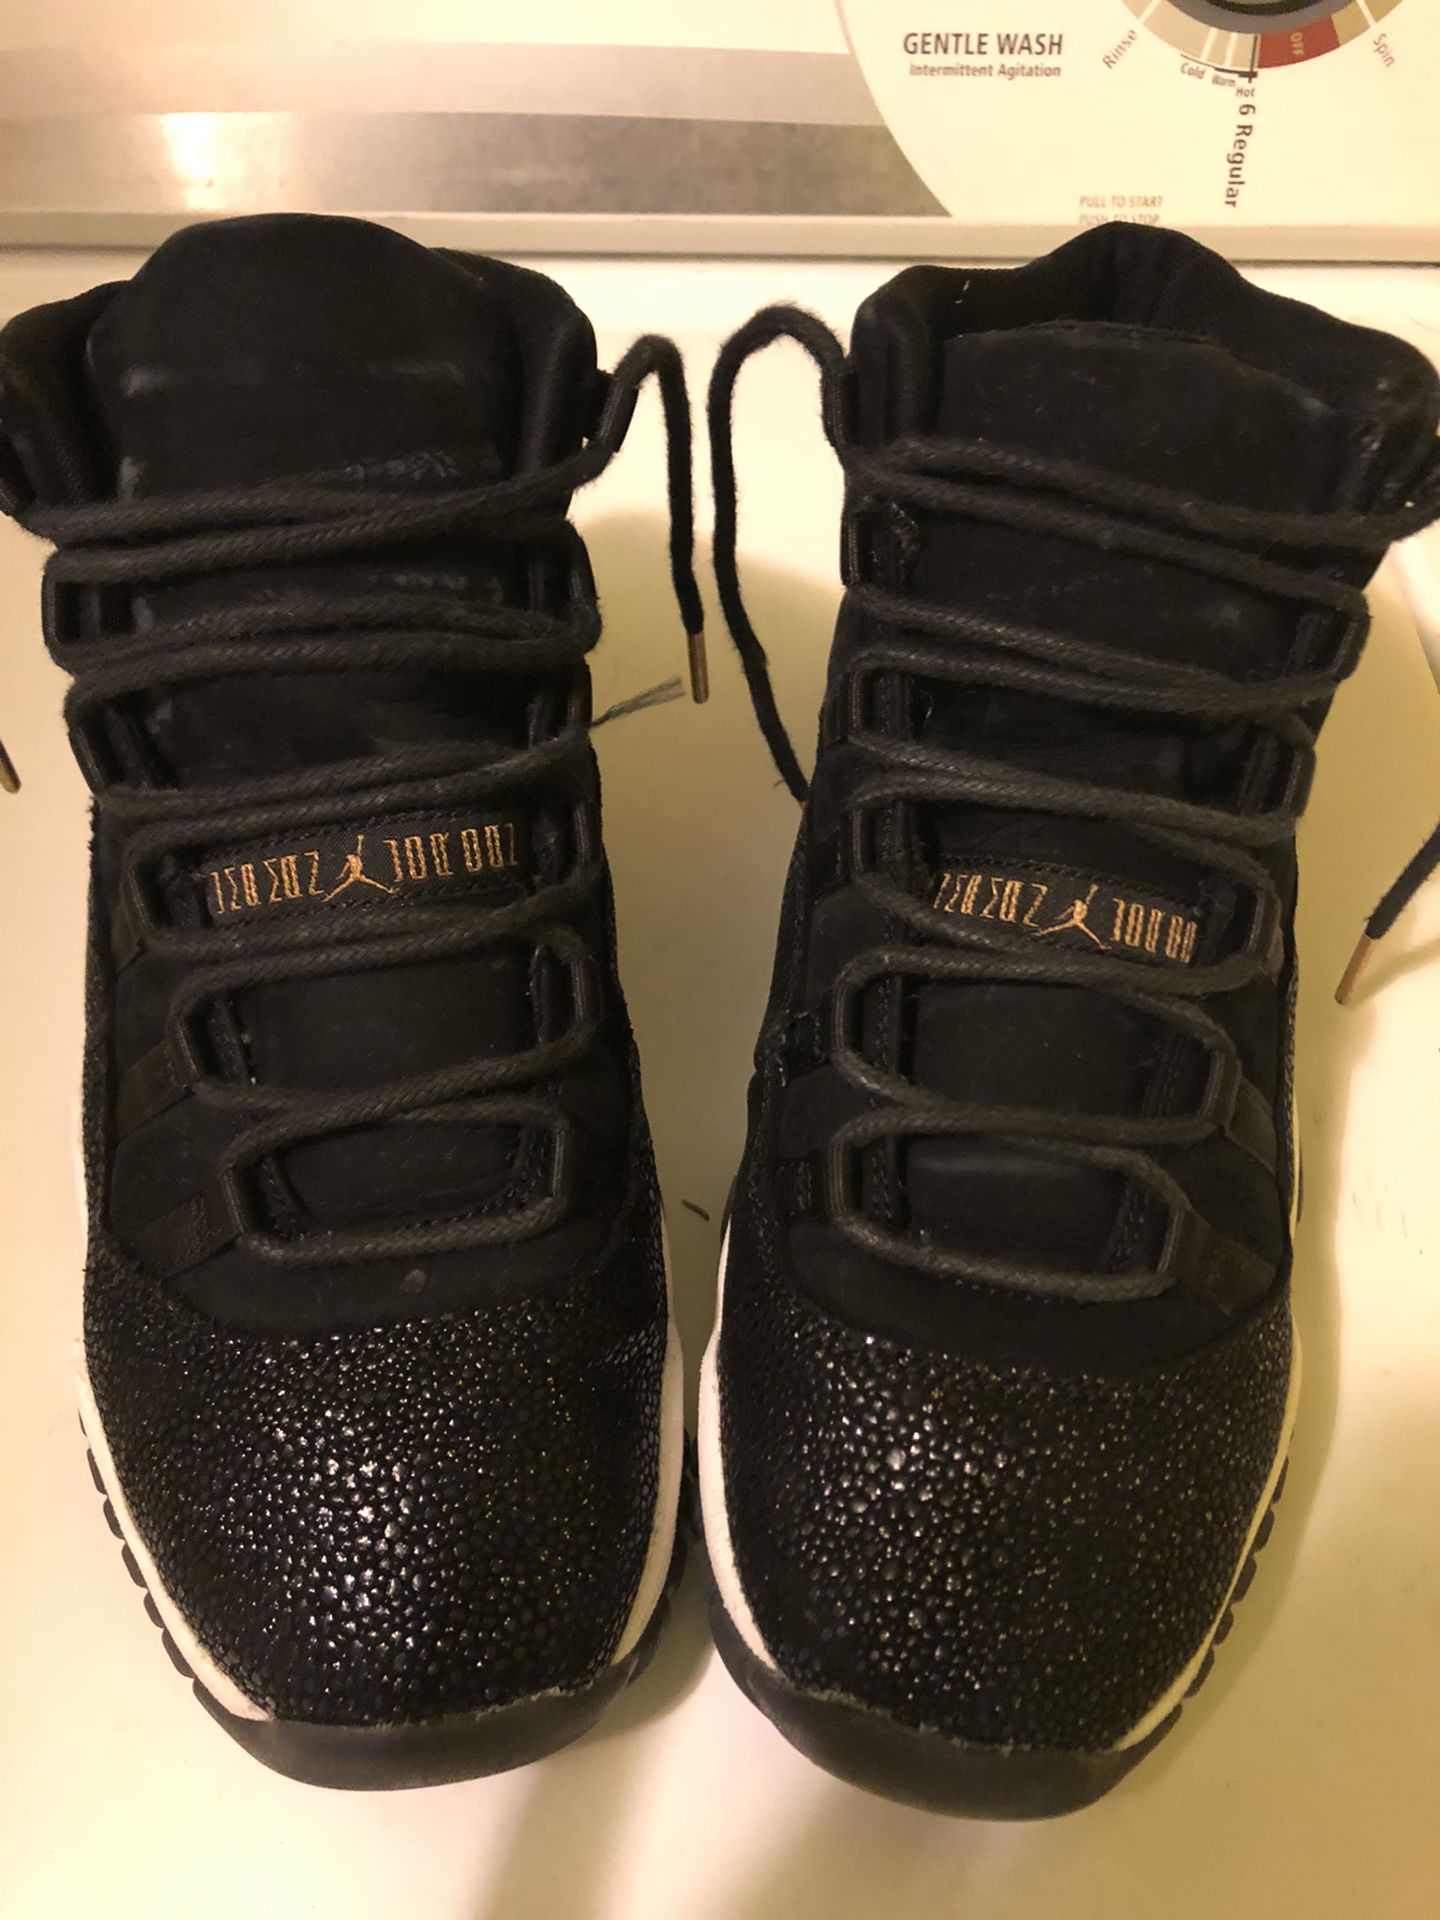 Air Jordans retro 11‘s size 5 y in boys